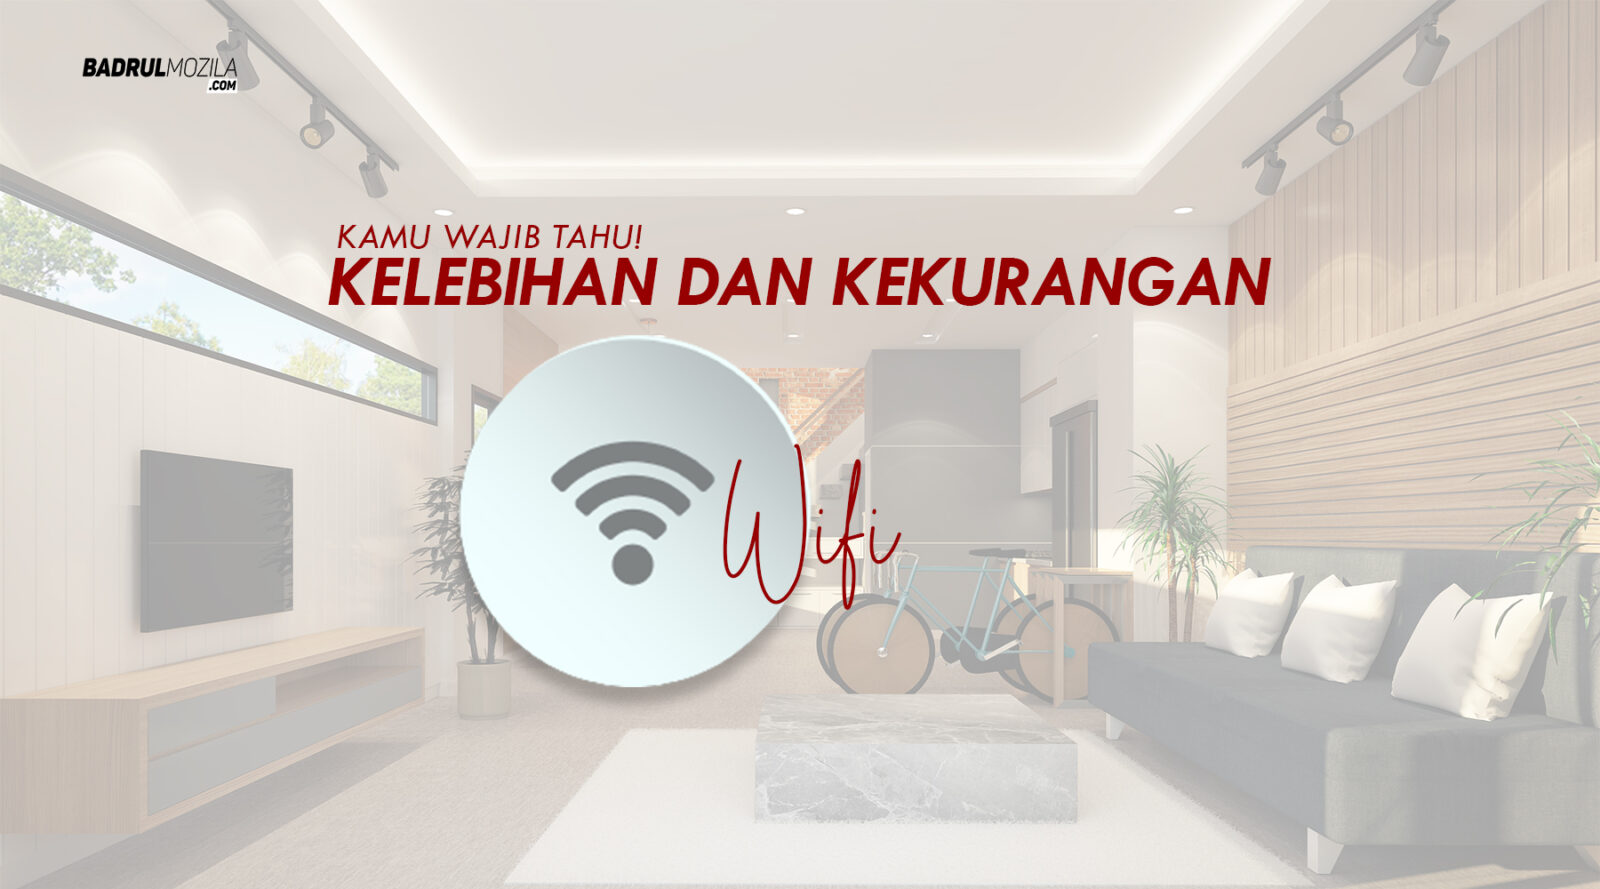 Kelebihan dan Kekurangan Wifi